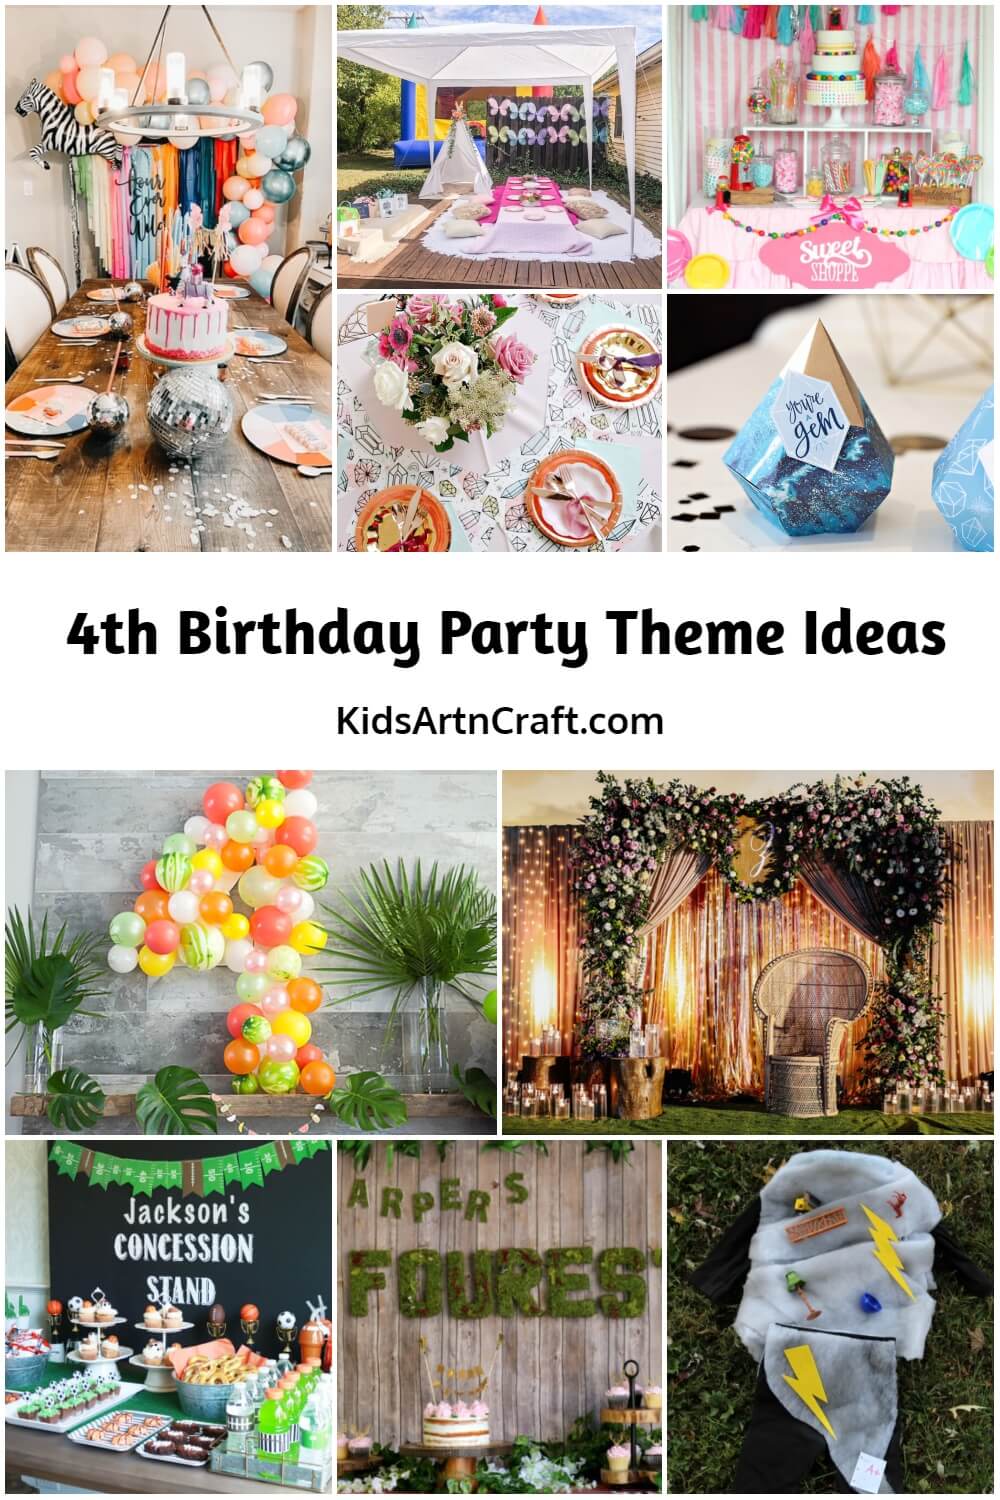 4th Birthday Party Theme Ideas